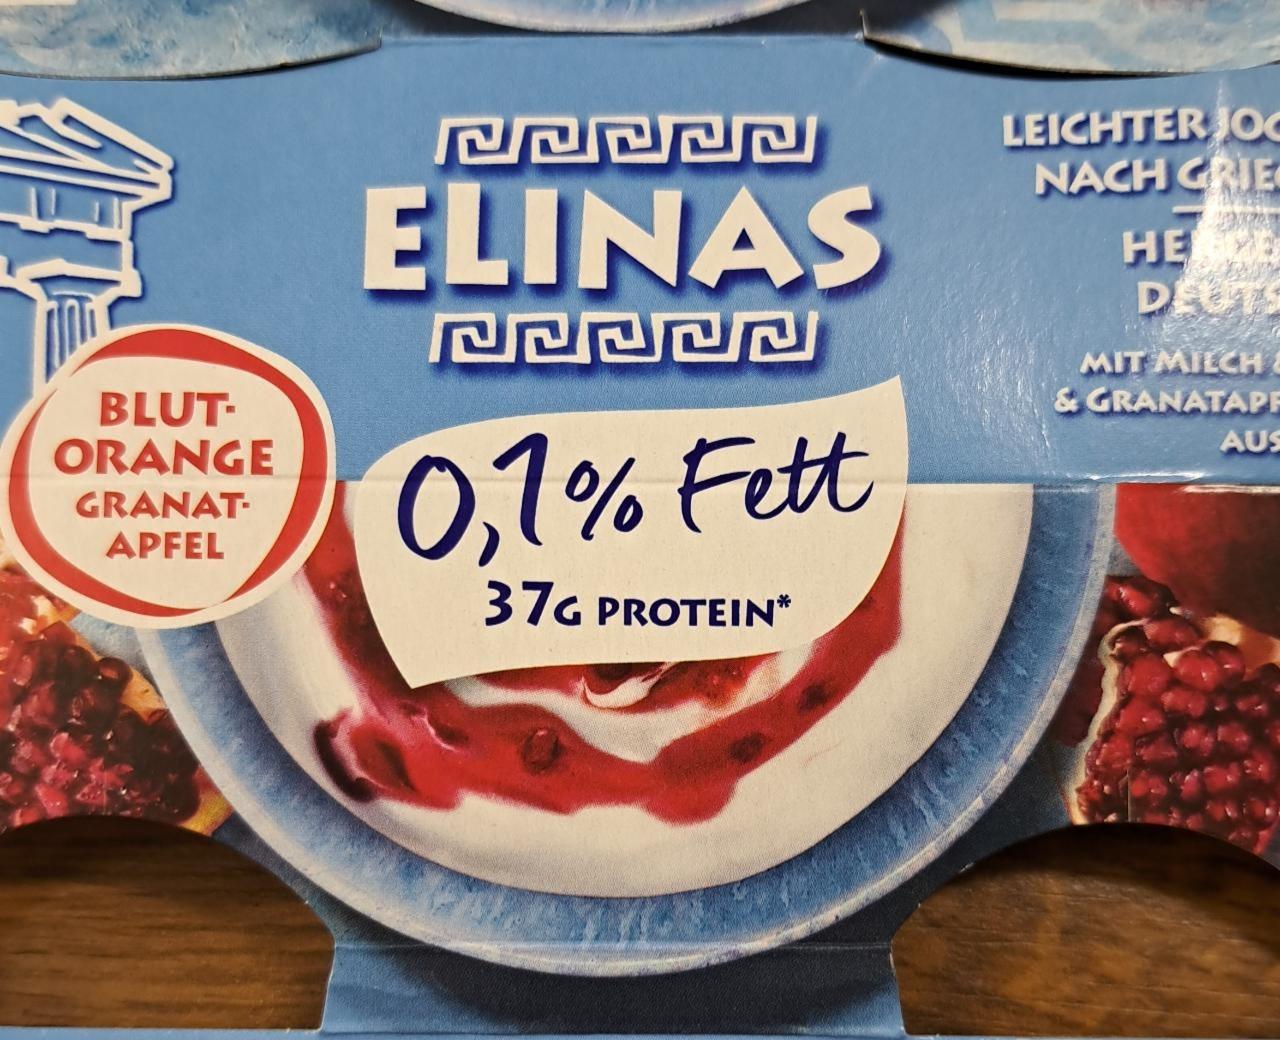 Fotografie - Joghurt nach Griechischer Art Blutorange Granatapfel 0,1% Fett Elinas